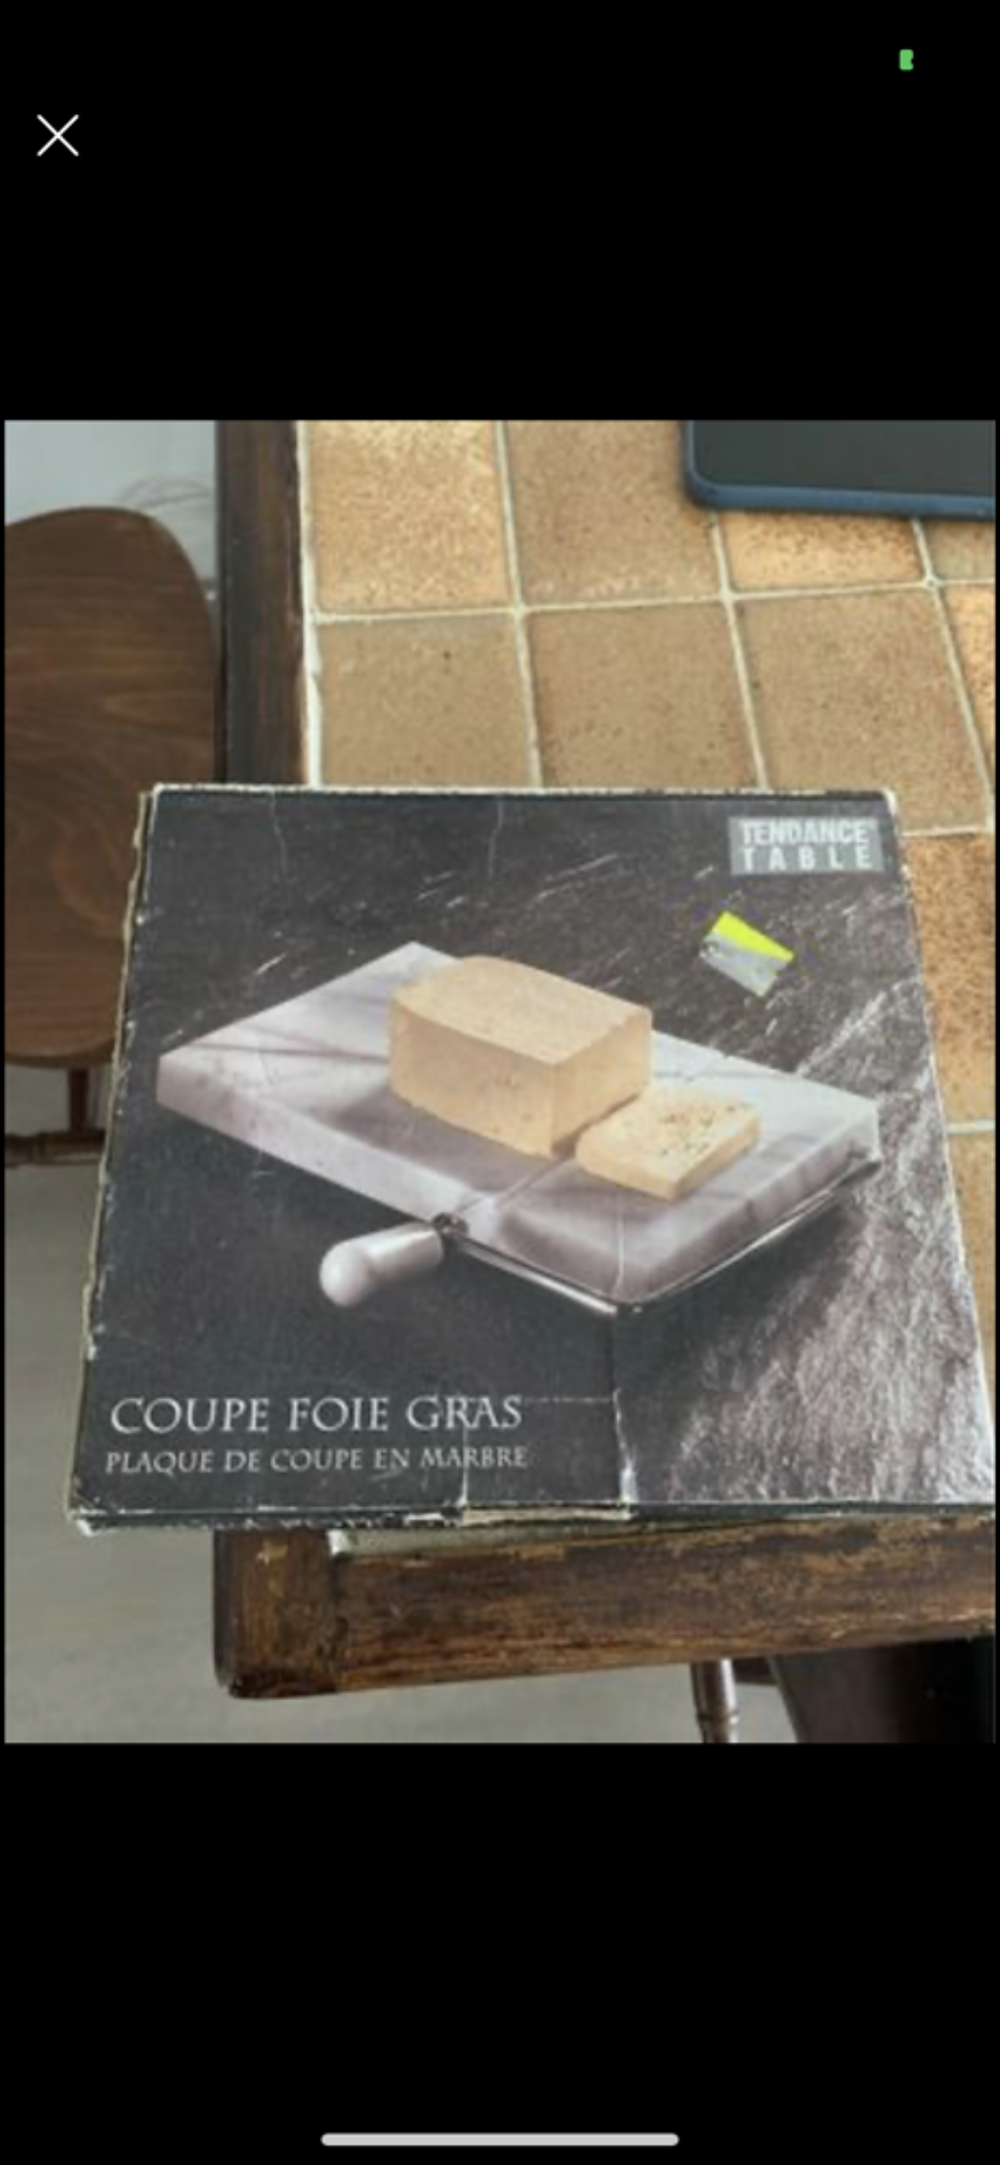 Coupe foie gras Cuisine